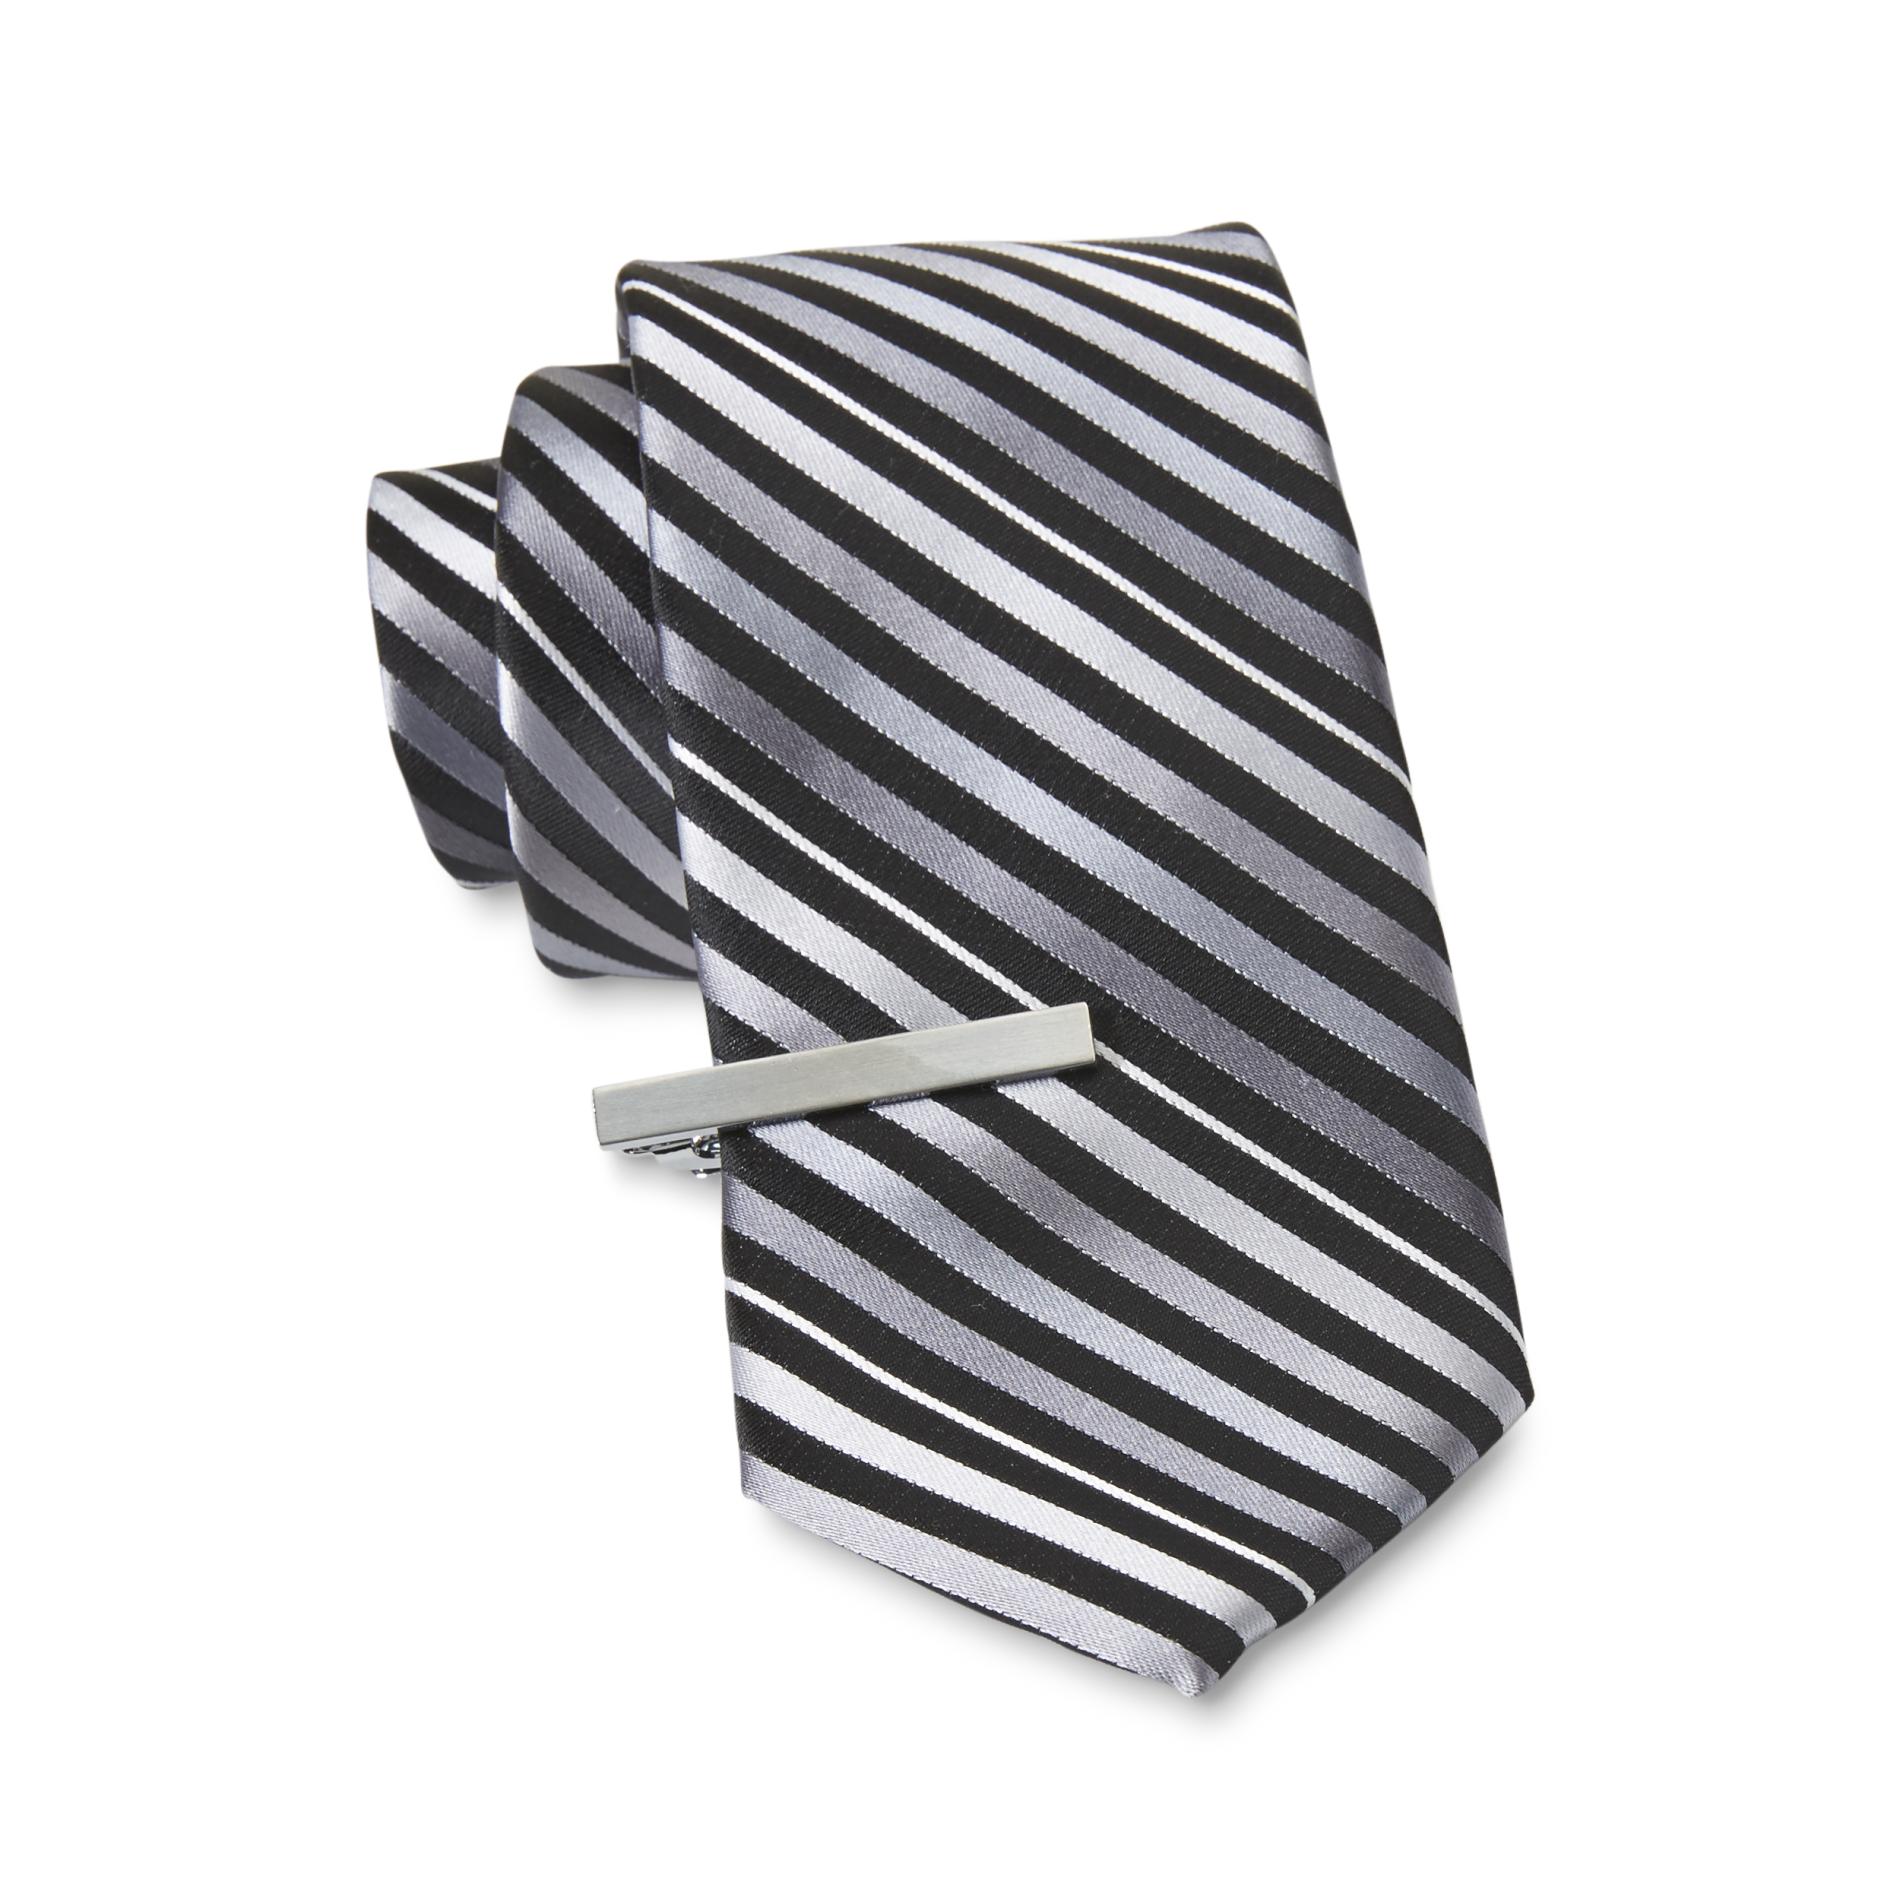 Structure Men's Necktie & Tie Bar - Striped